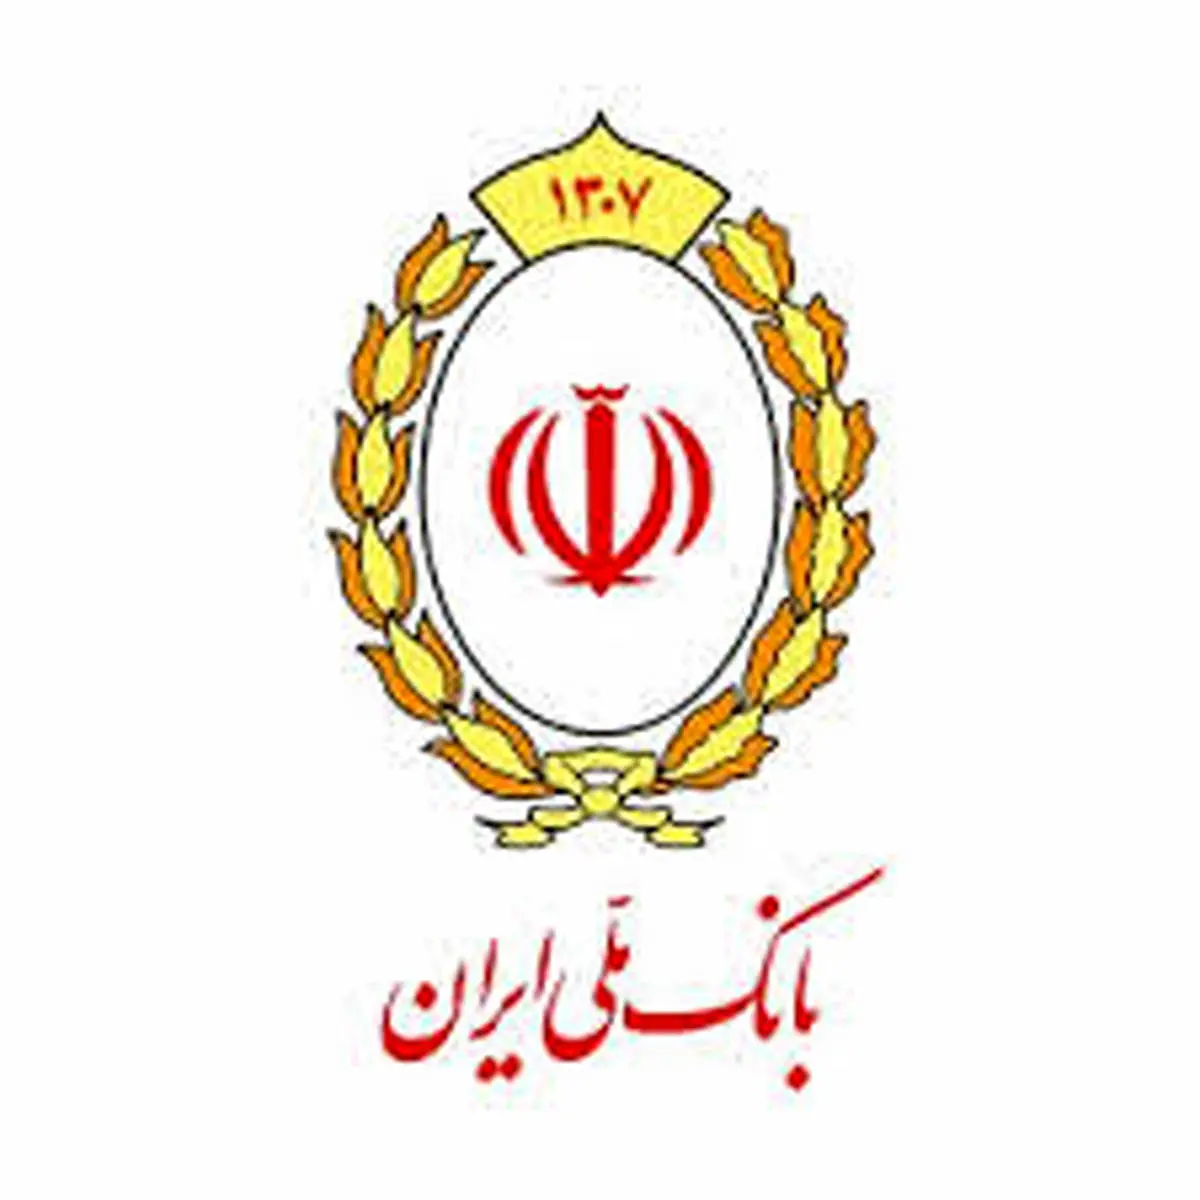 جایگاه های برتر بانک ملی ایران در گزارش فروردین ماه شاپرک

